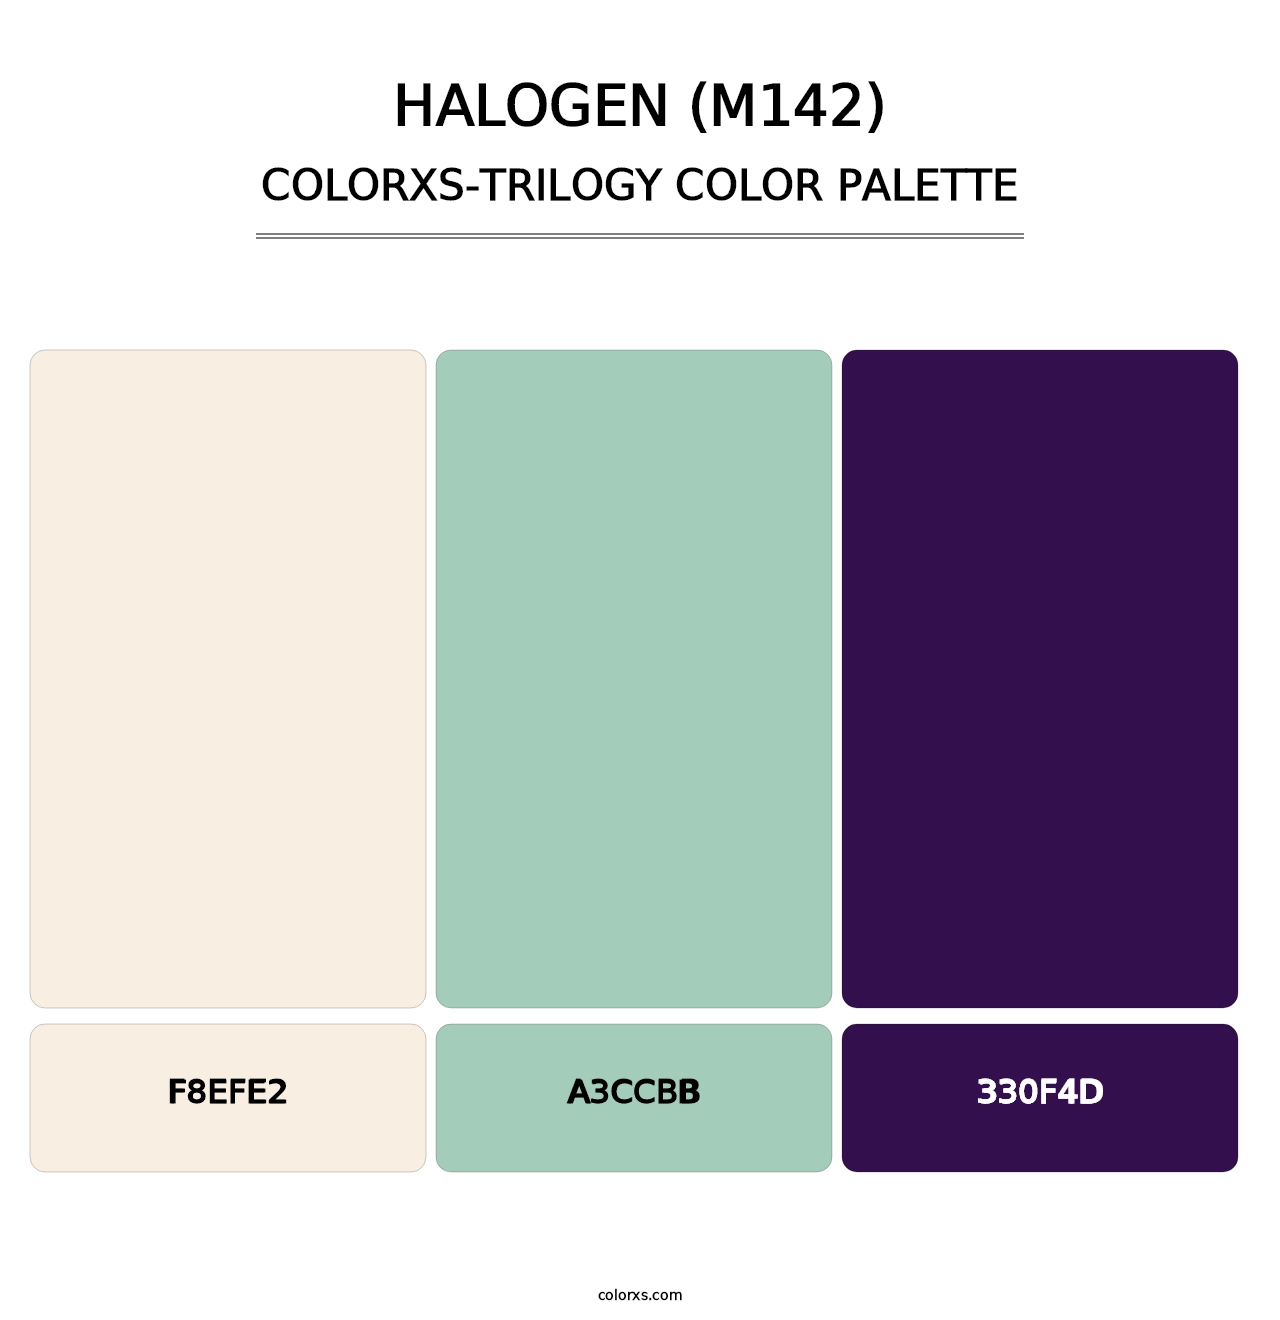 Halogen (M142) - Colorxs Trilogy Palette